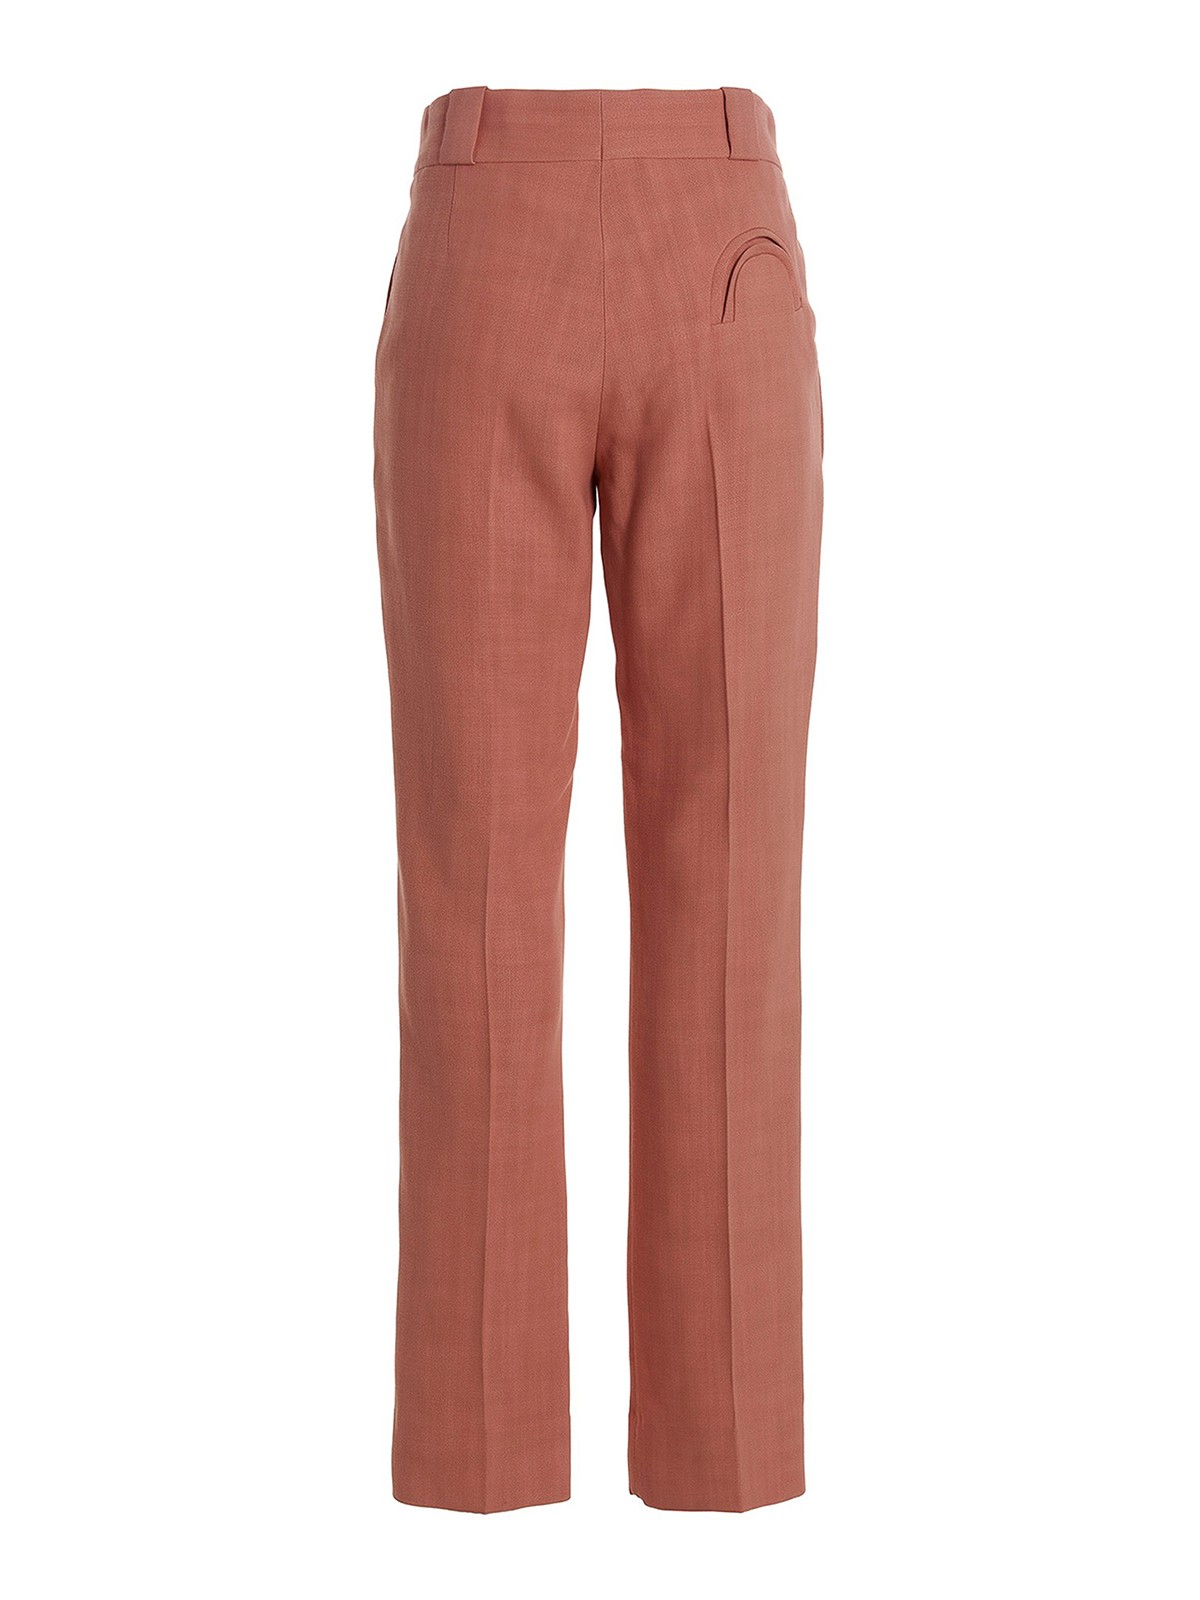 Buy Women's Orange Casual Trousers Online